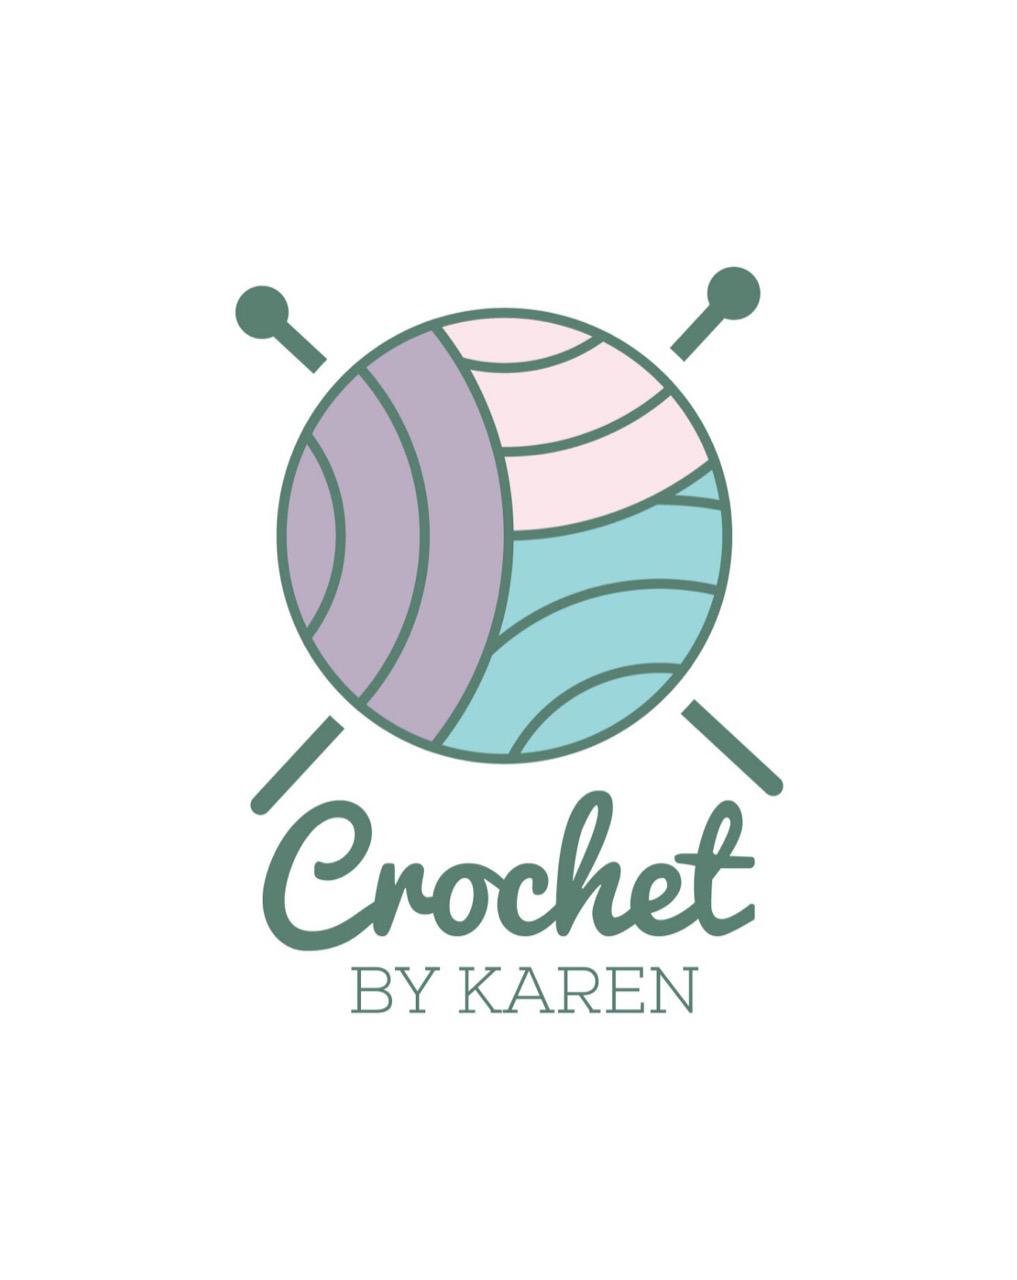 Crochet by karen